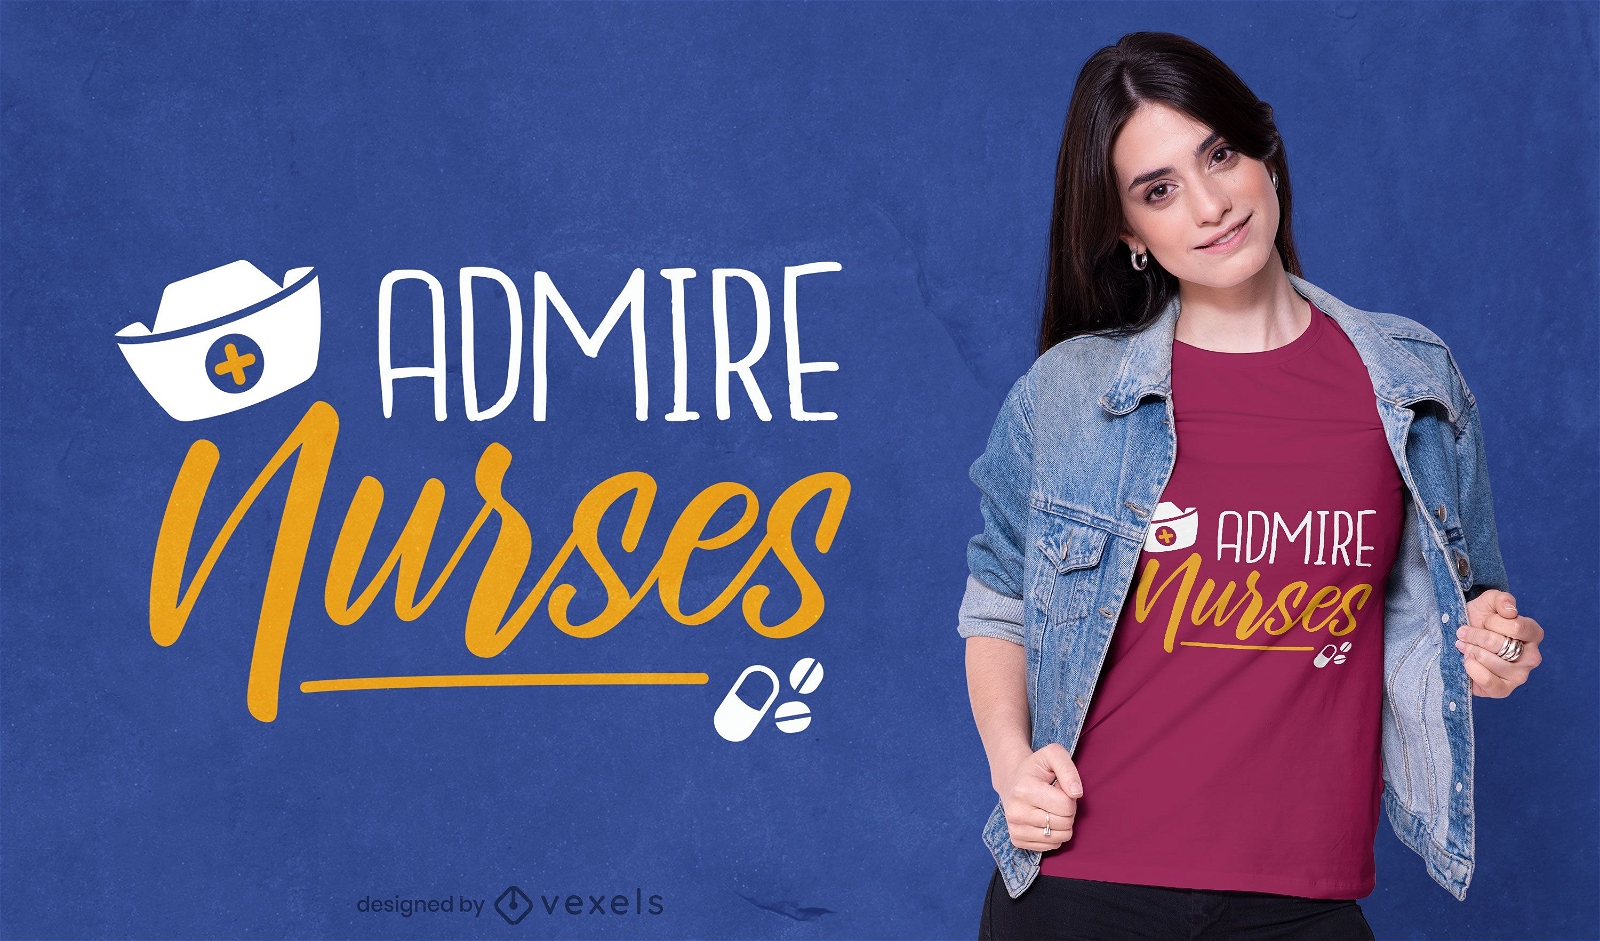 Admire o design de camisetas de enfermeiras